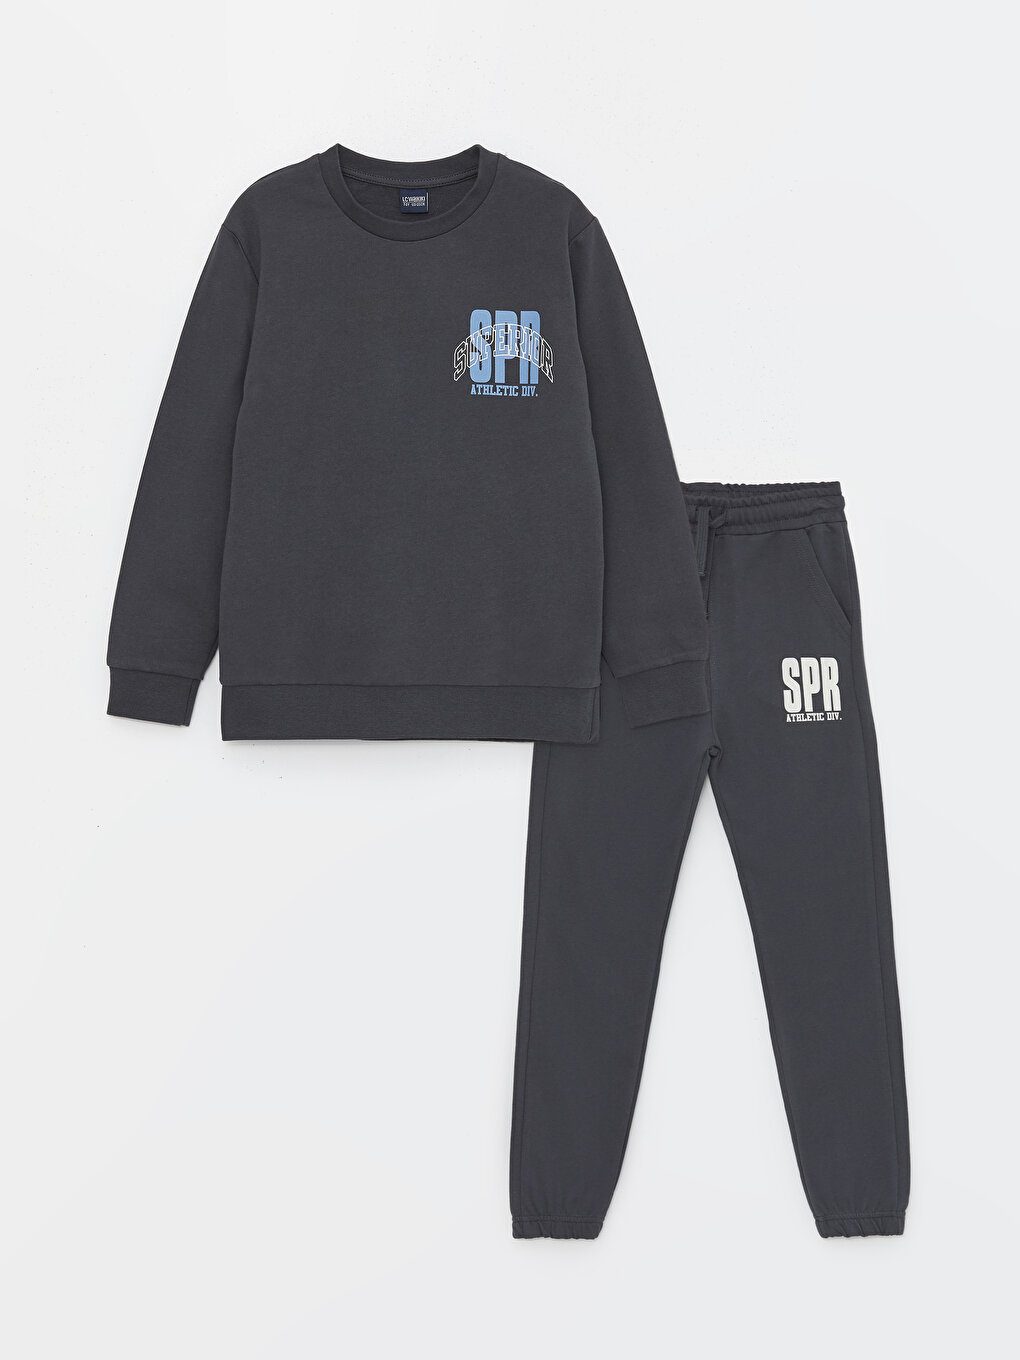 Crew Neck Printed Long Sleeve Boy Sweatshirt and Sweatpants 